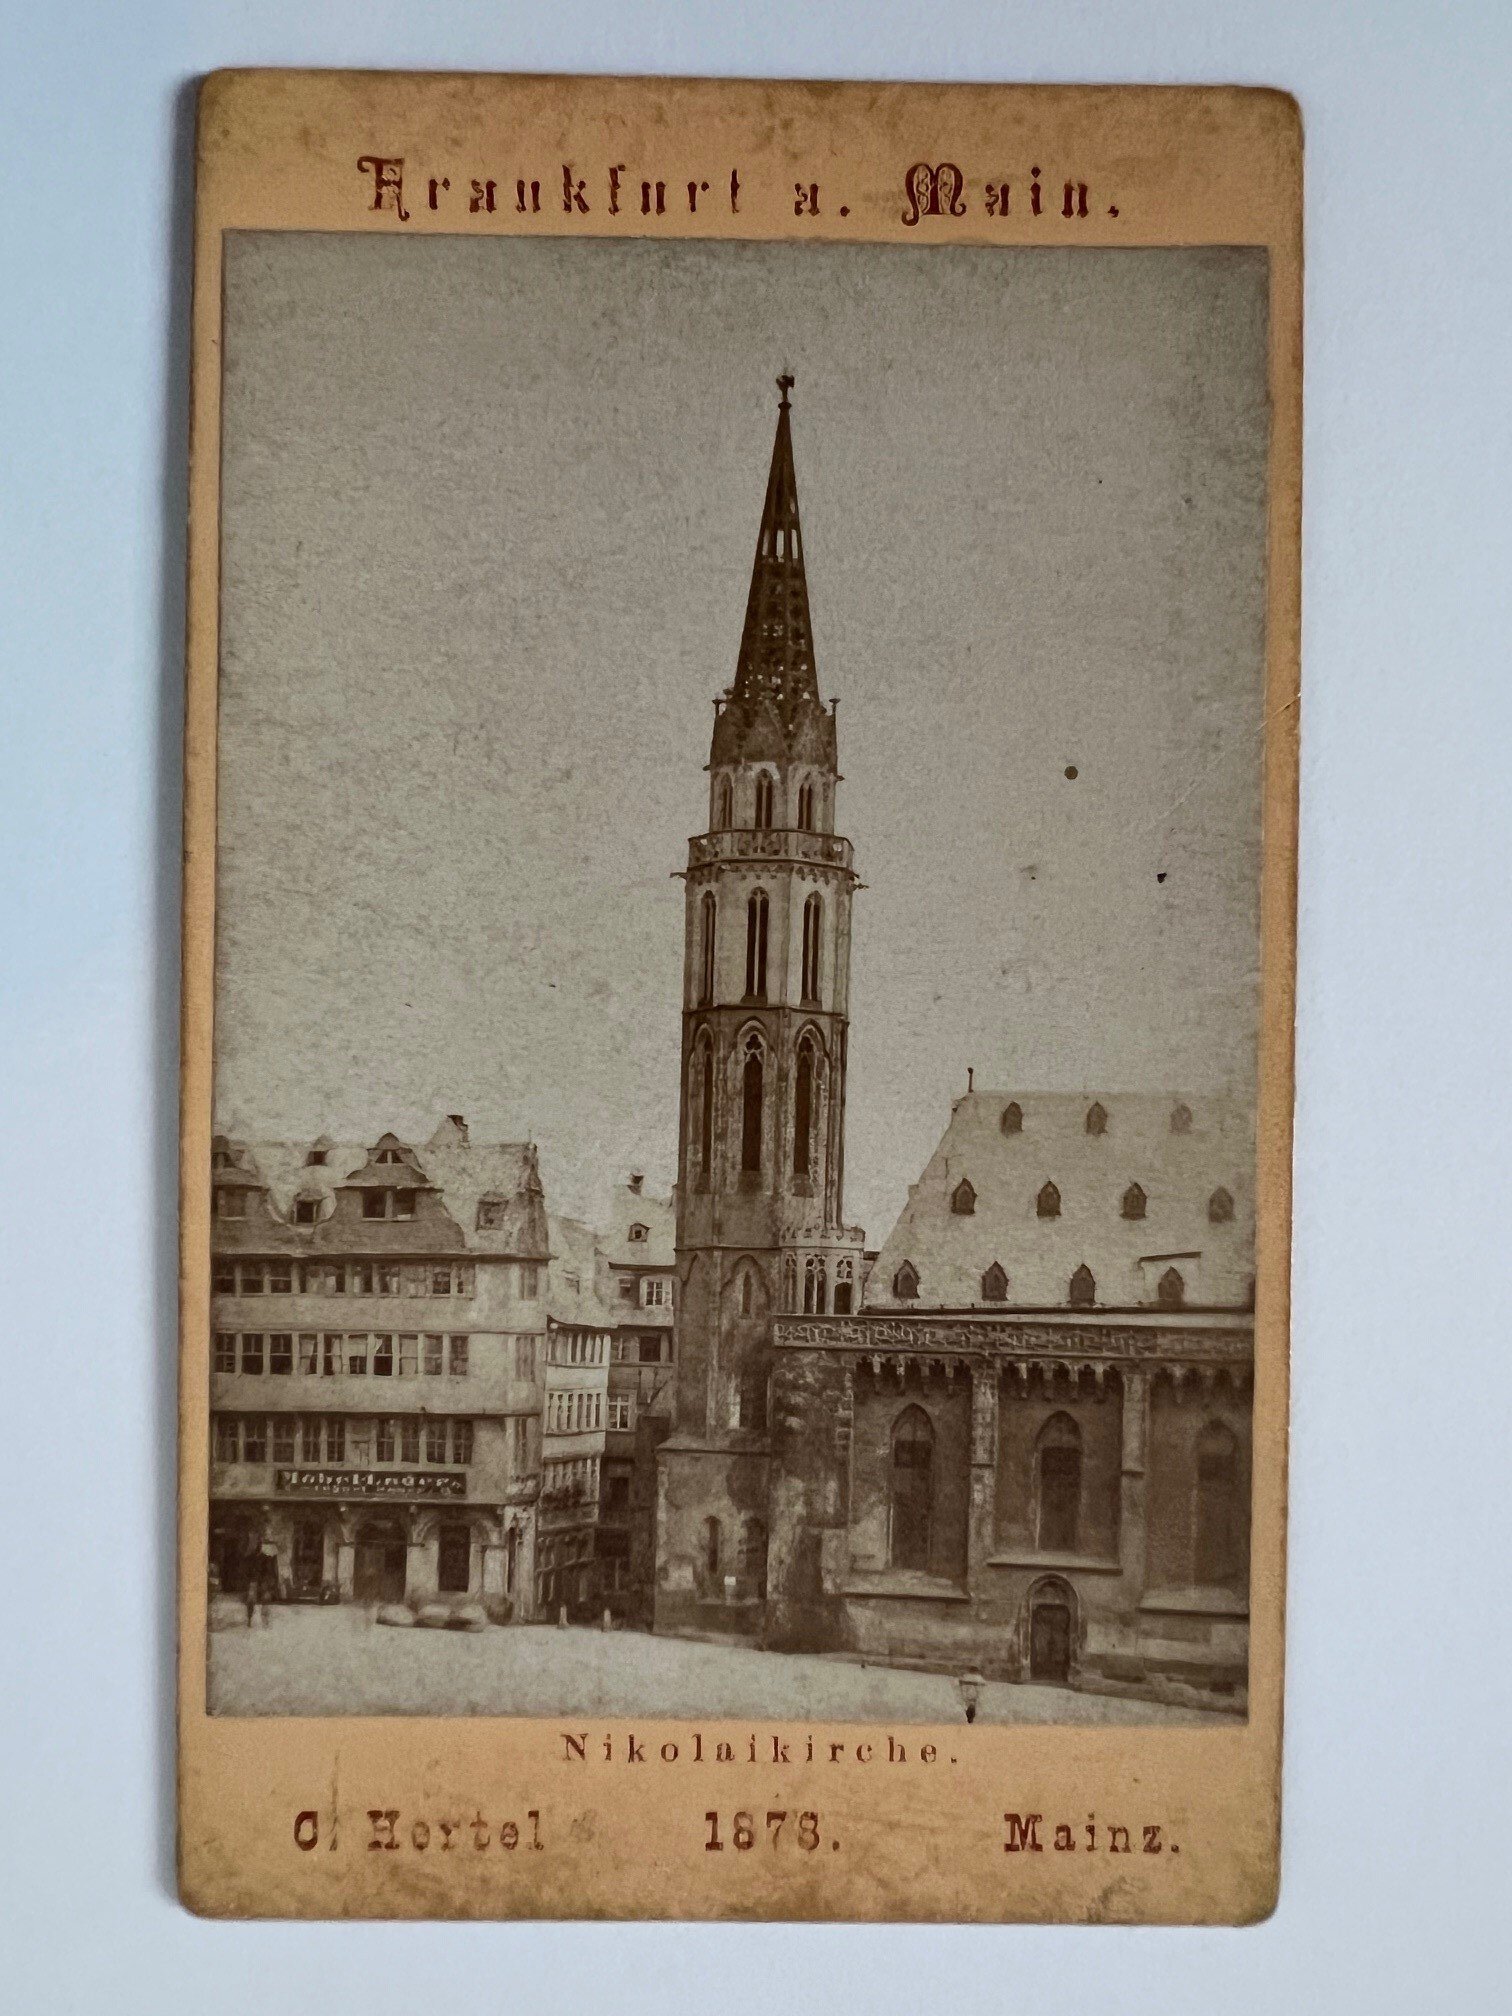 CdV, Carl Hertel, Frankfurt, Nikolaikirche, 1878. (Taunus-Rhein-Main - Regionalgeschichtliche Sammlung Dr. Stefan Naas CC BY-NC-SA)